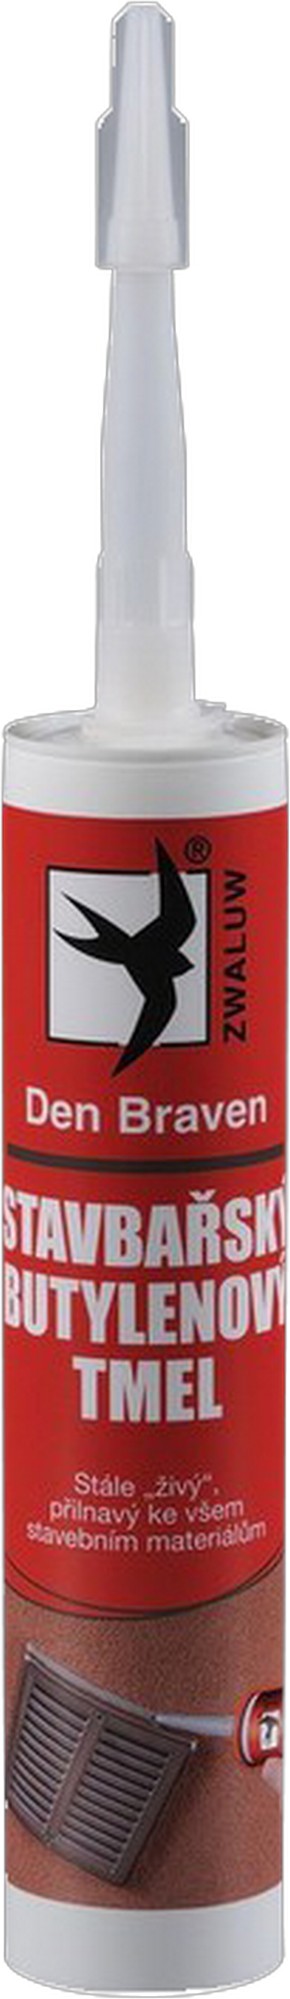 Tmel stavbařský butylenový Den Braven bílý 600 ml DEN BRAVEN